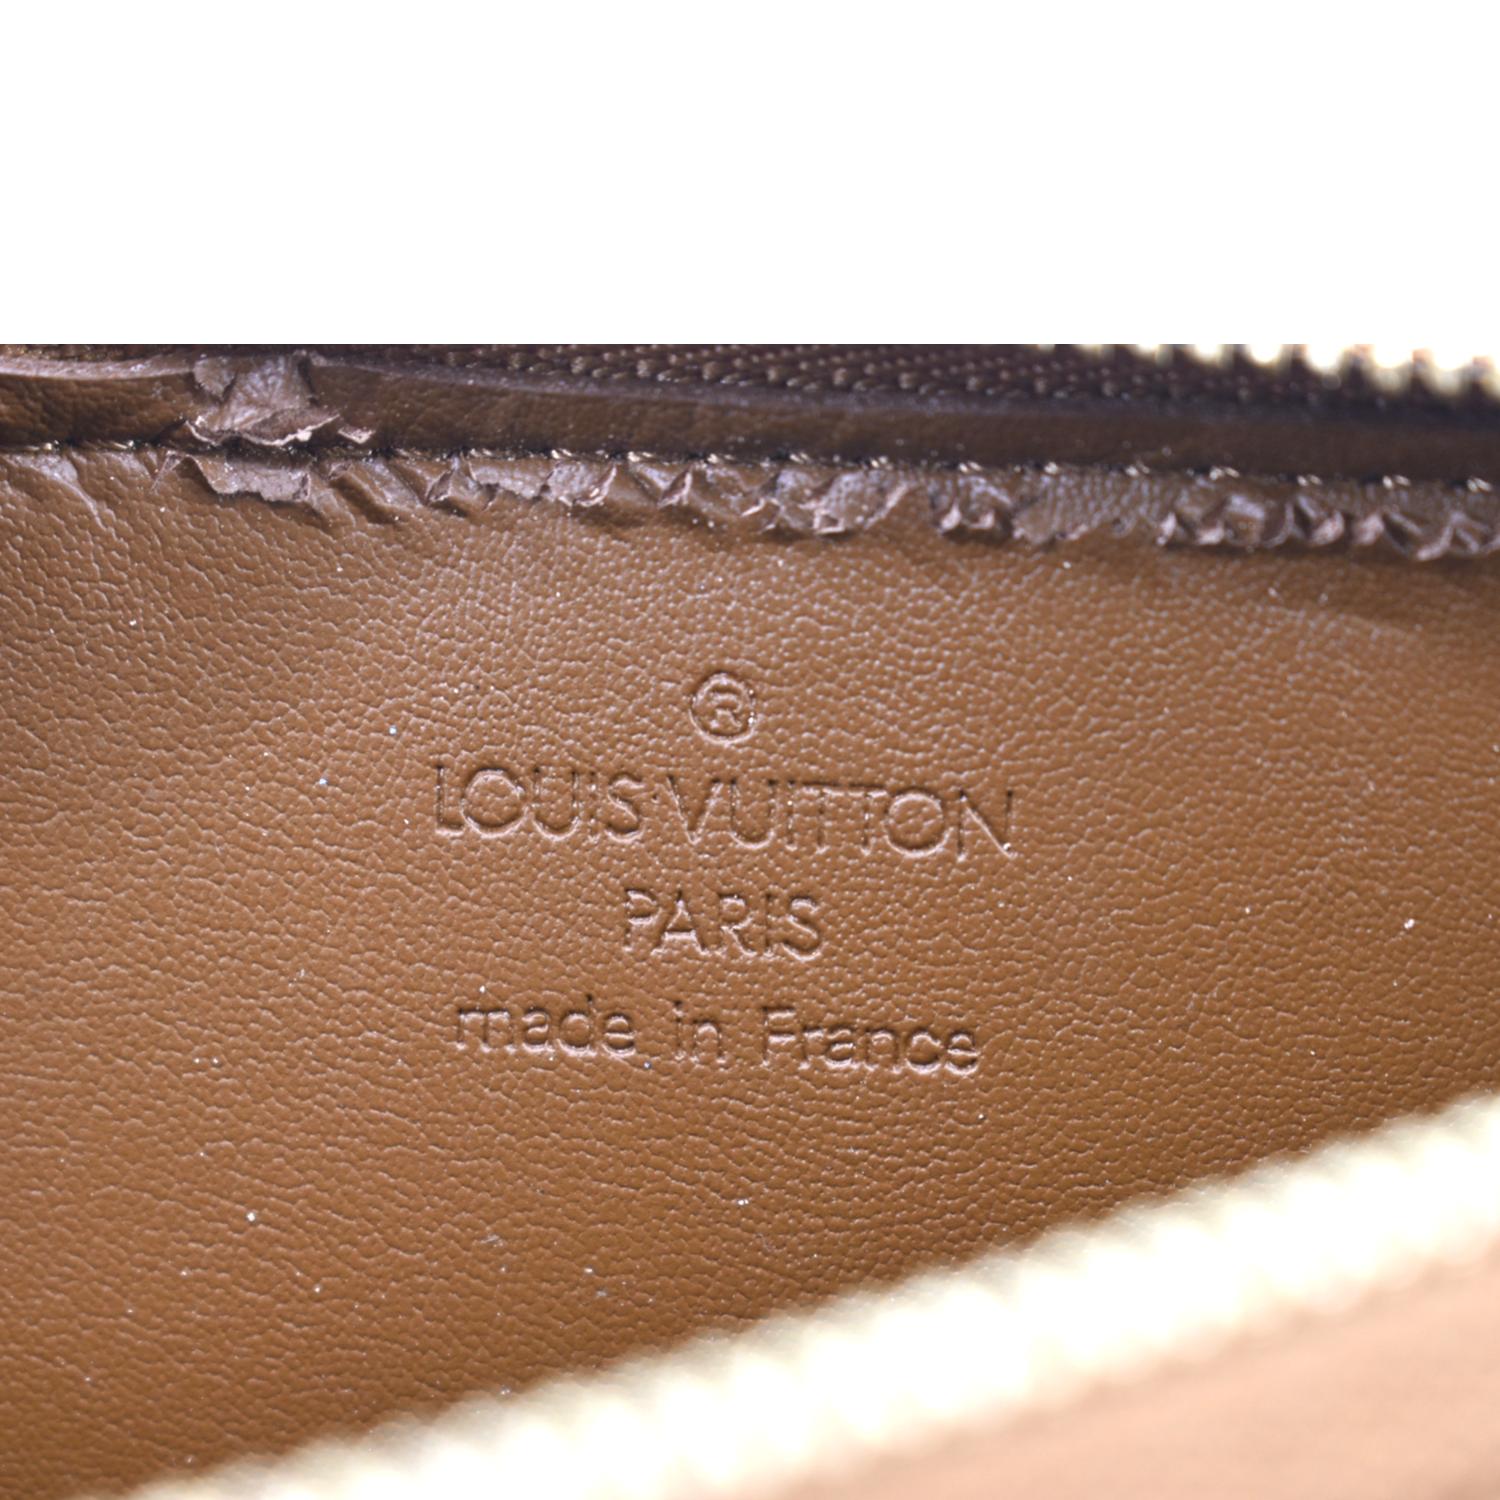 Authentic Louis Vuitton Vernis Lexington Hand Bag Pouch Yellow M91010 LV  J9268